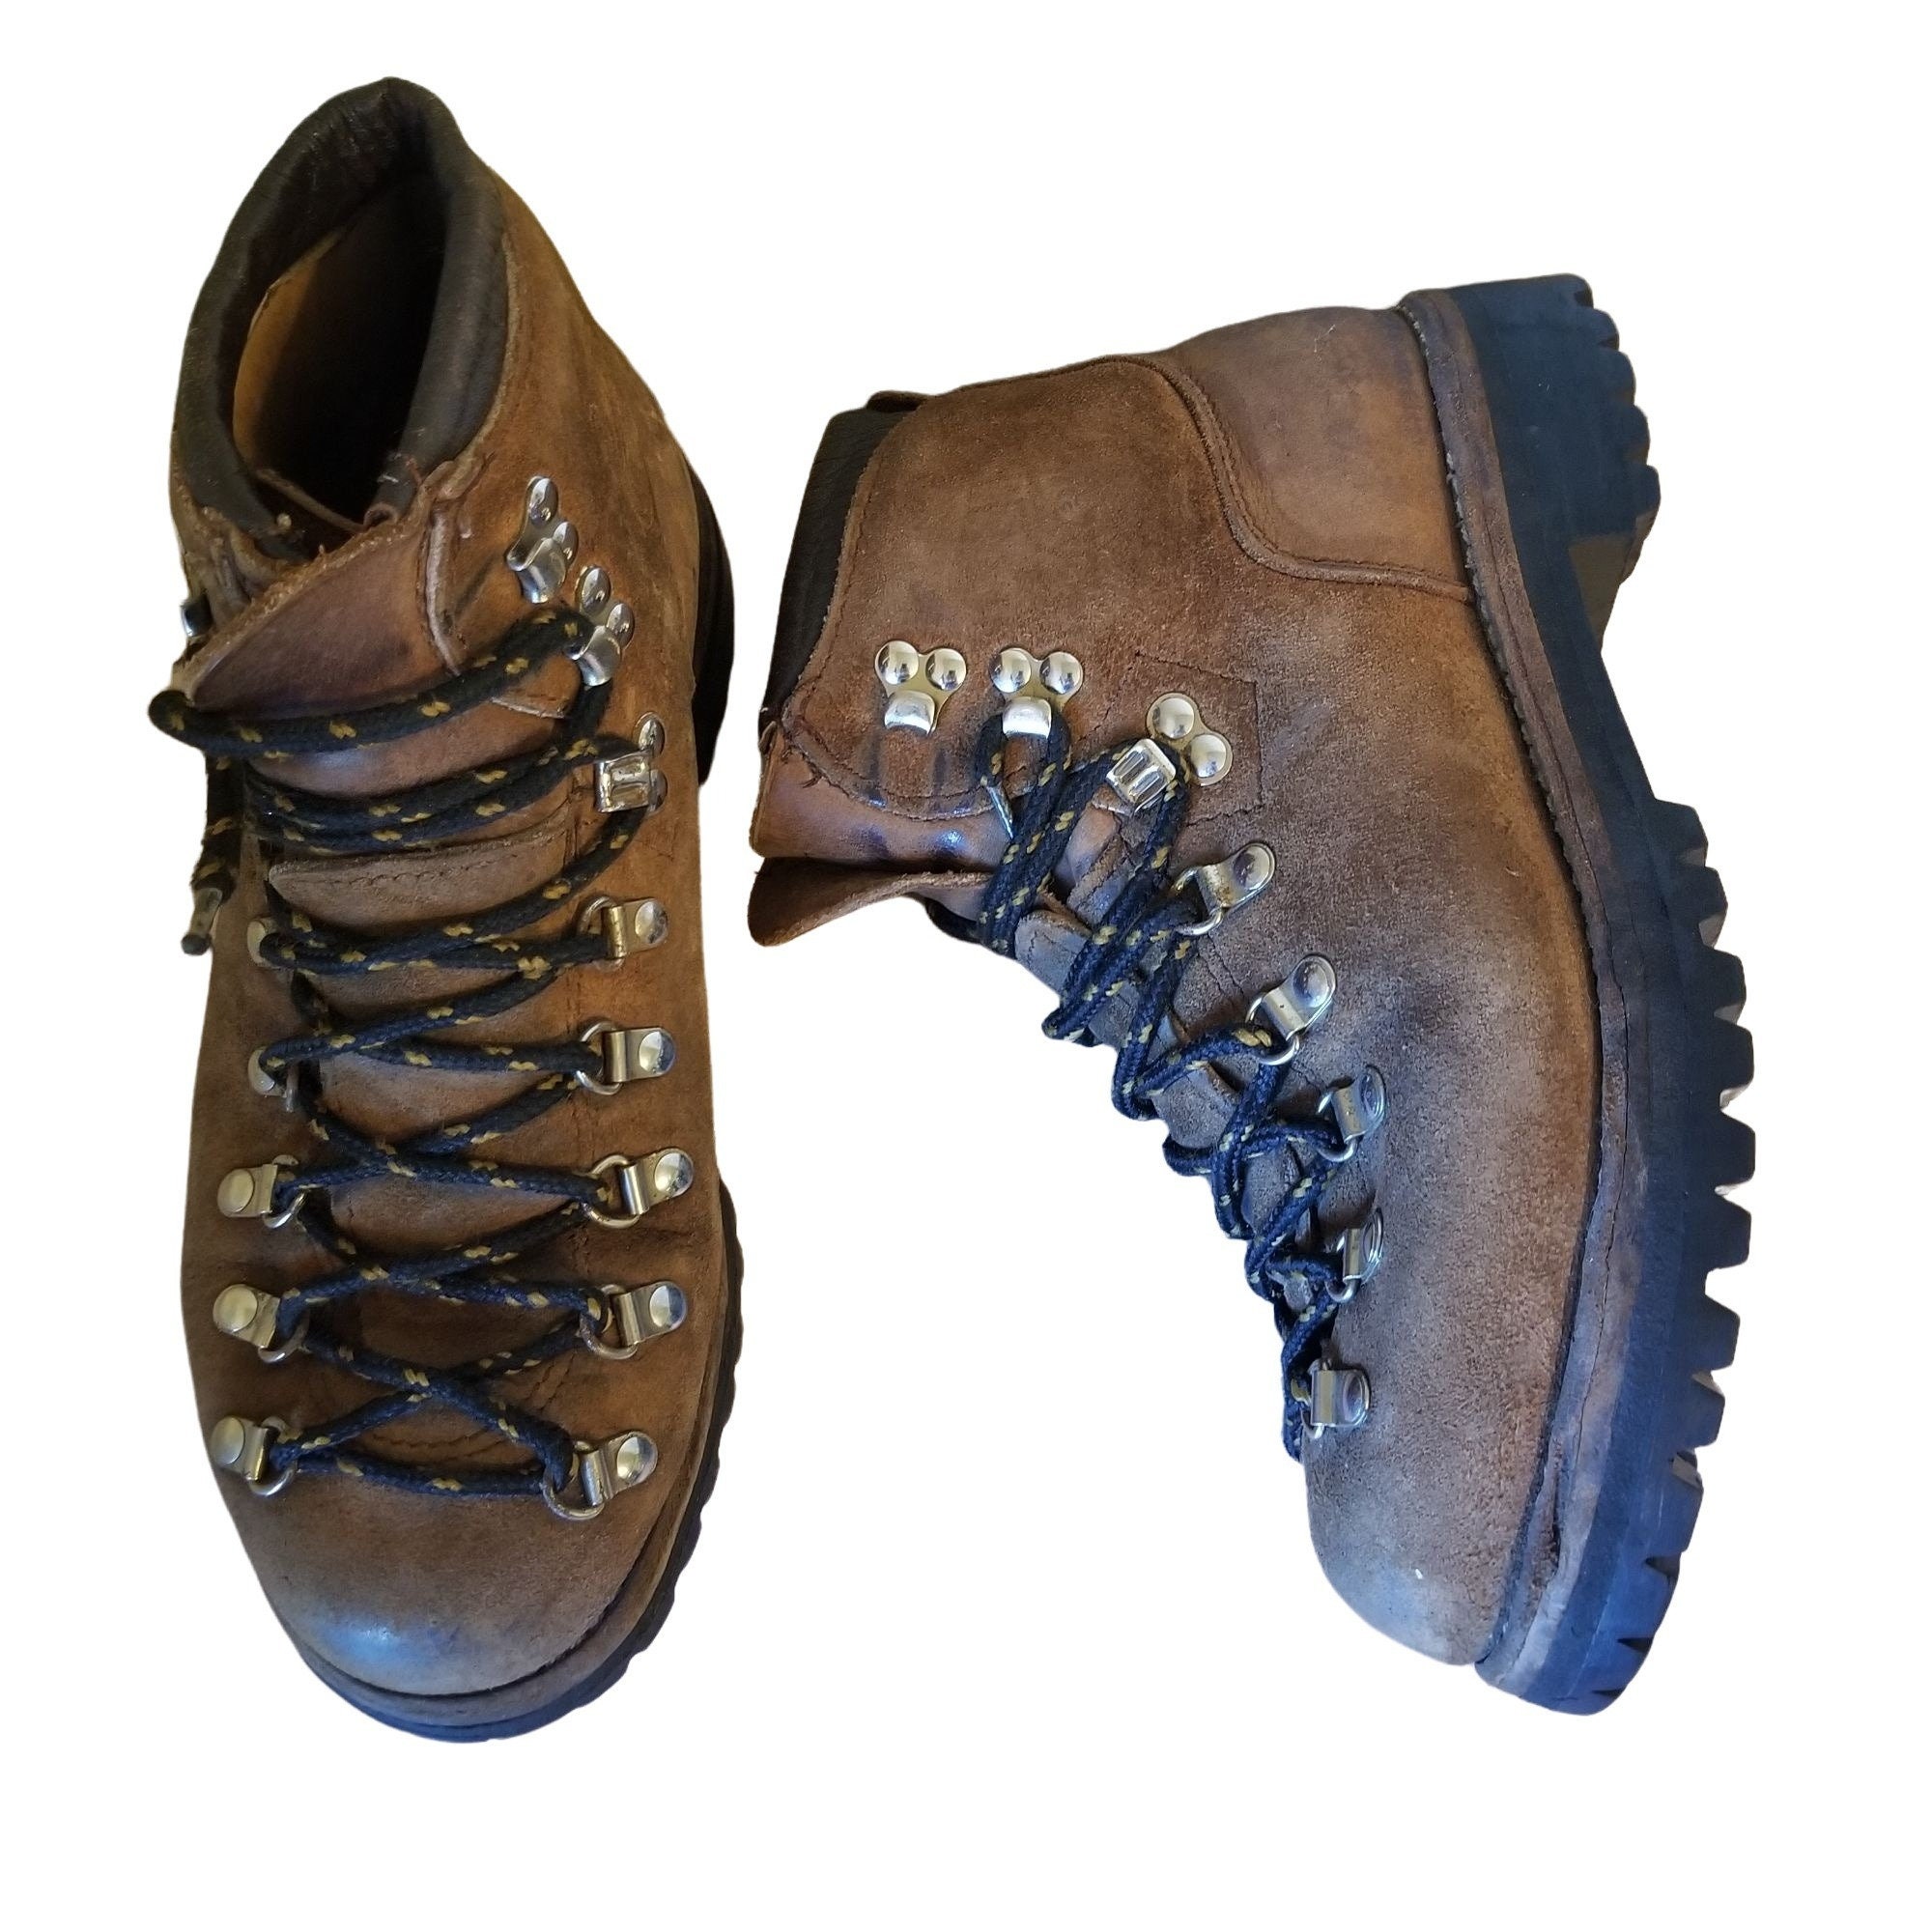 Combat boots rust фото 97